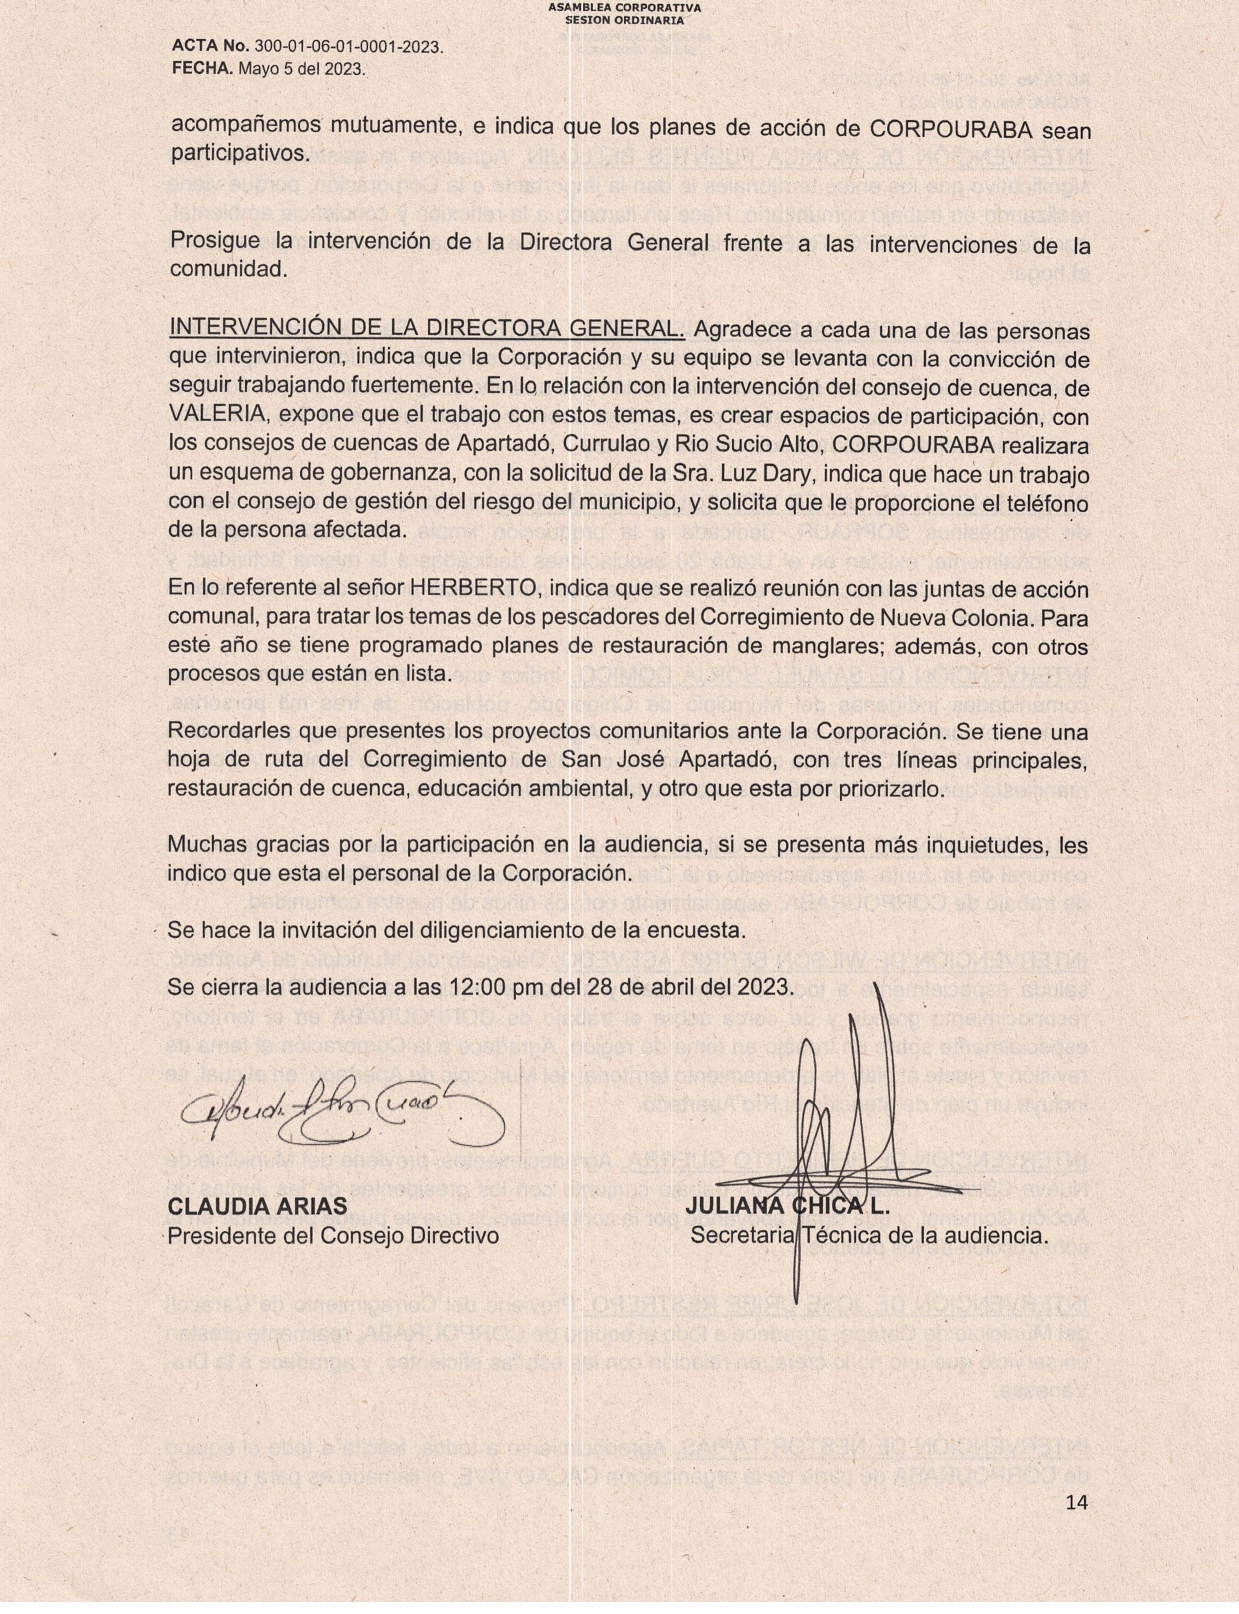 ACTA-0001-RENDICION-CUENTAS-2022_page-0014